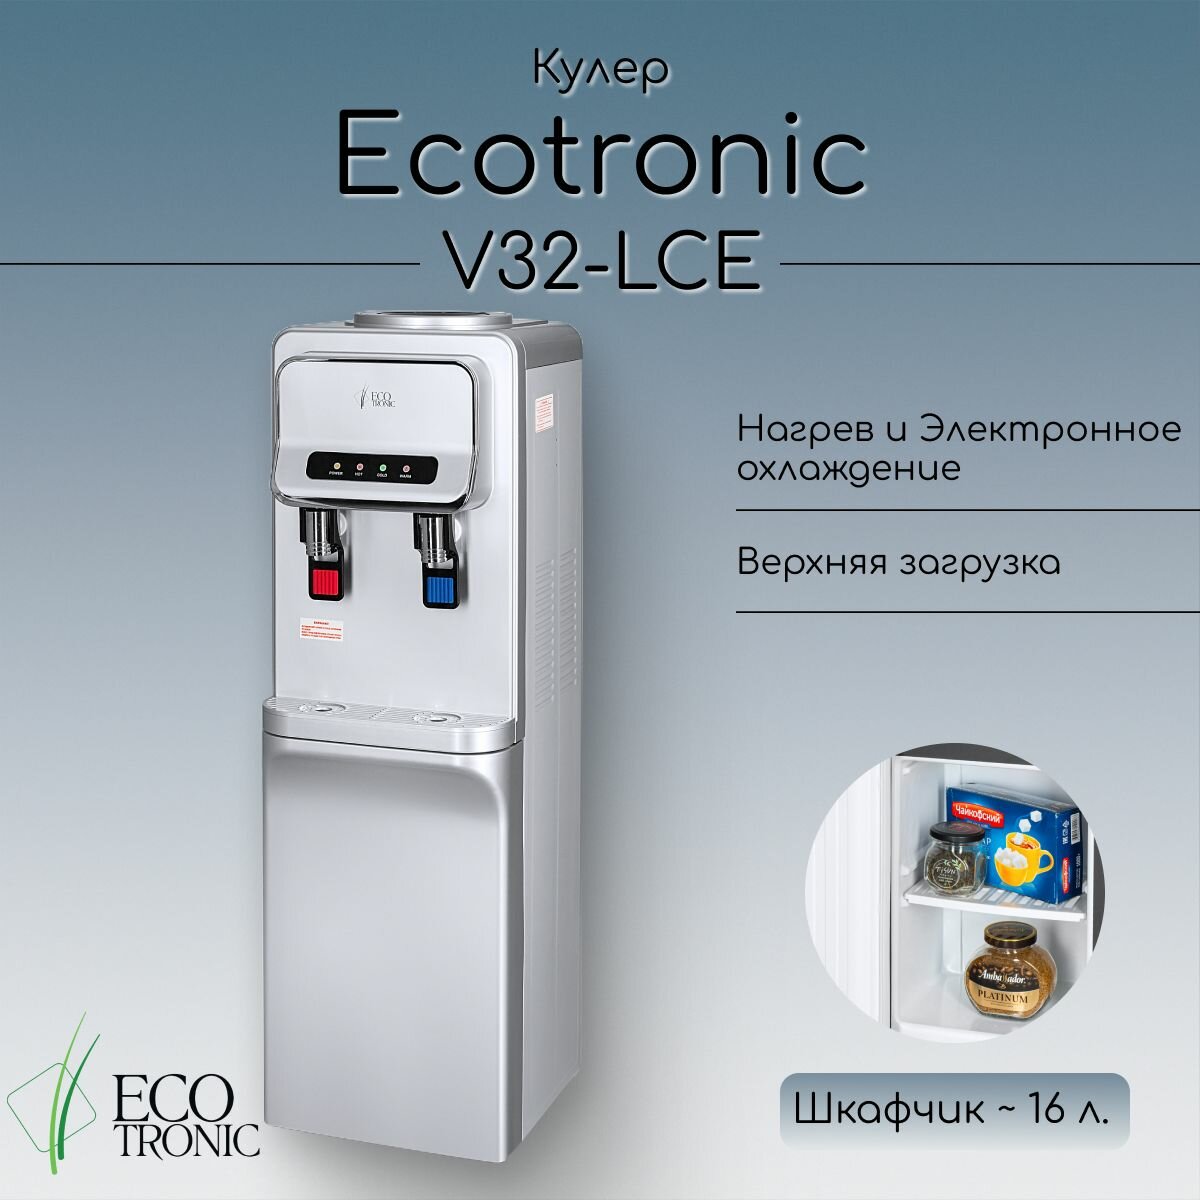 Кулер Ecotronic V32-LCE silver со шкафчиком